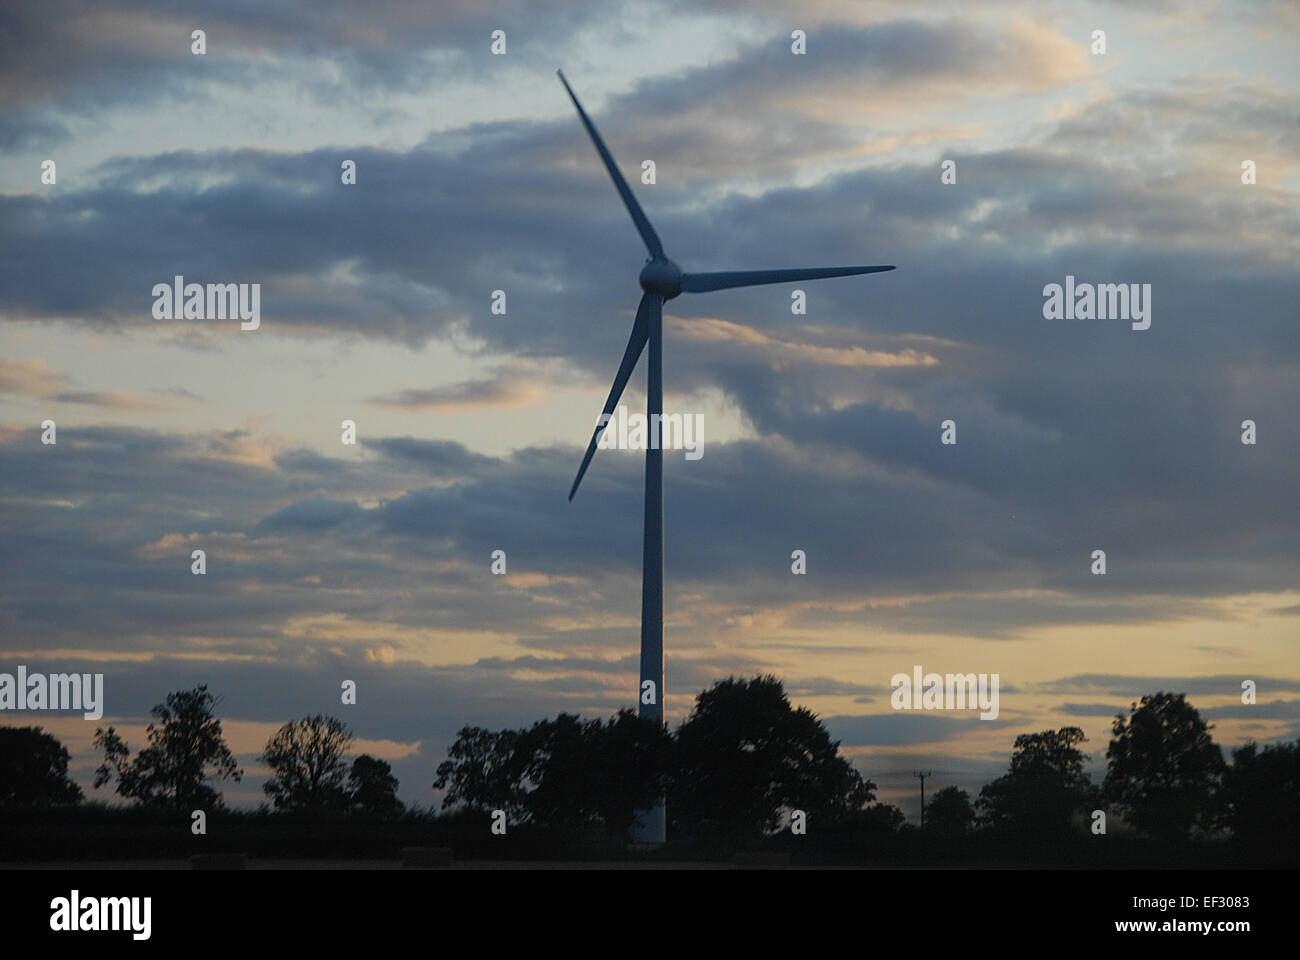 Wind turbine at dusk in Midlands, England, UK Stock Photo